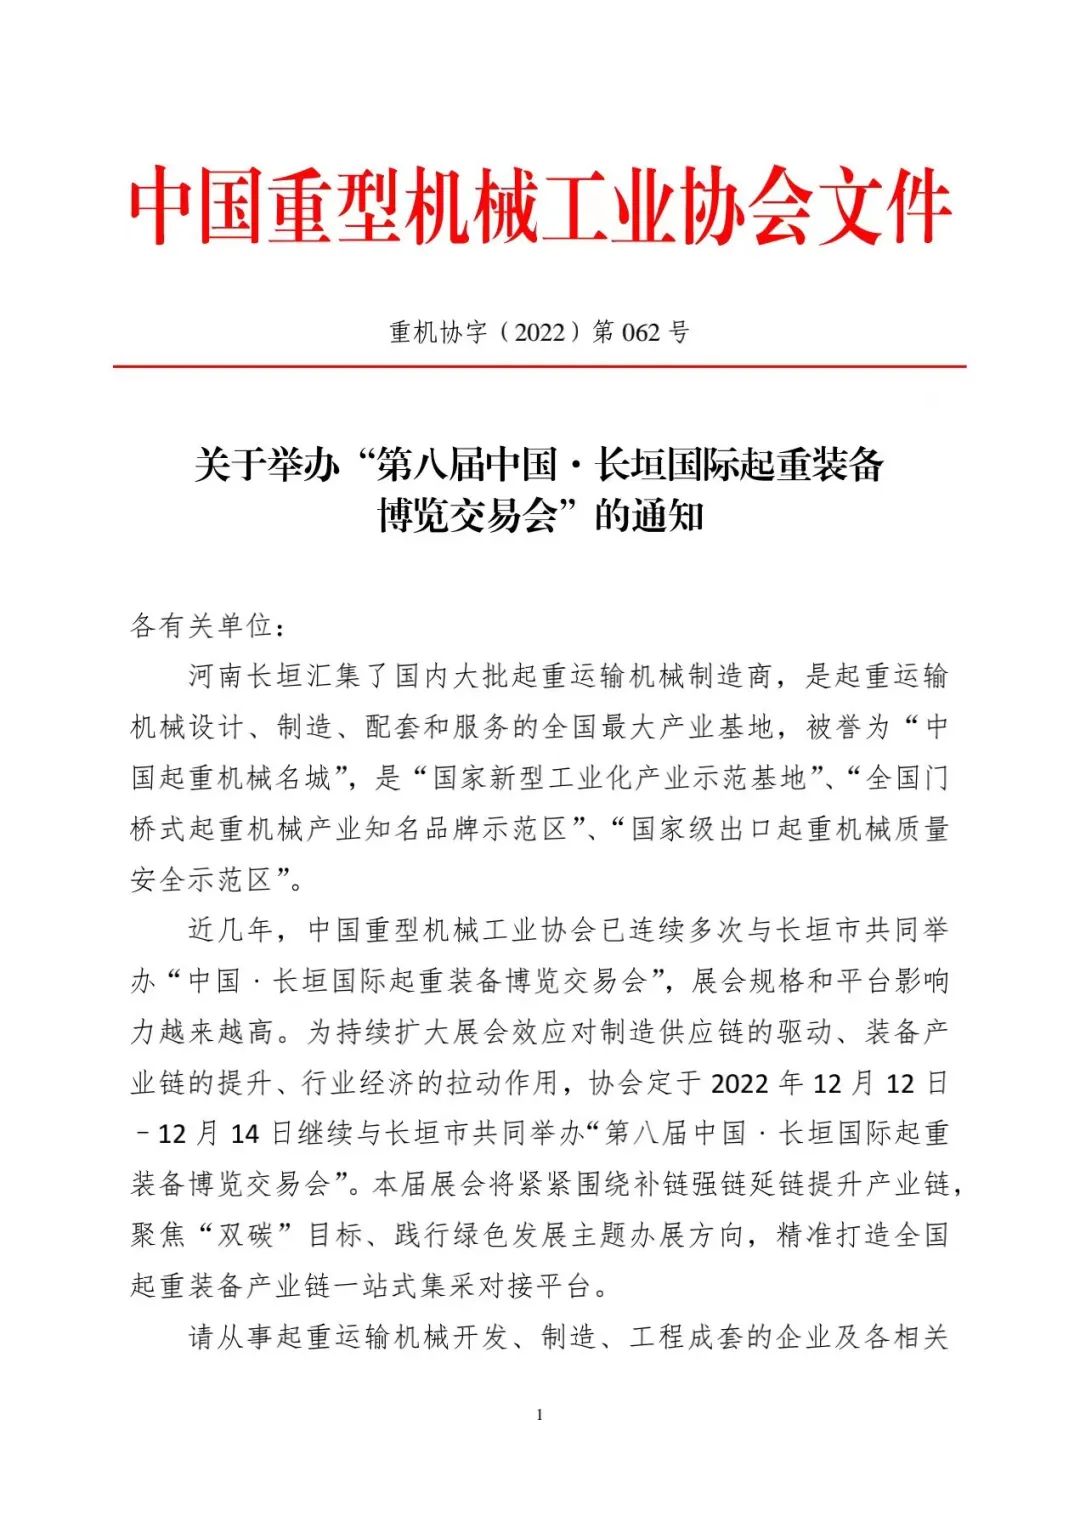 關於舉辦「第八屆中國•長垣國際起重裝備博覽交易會」的通知